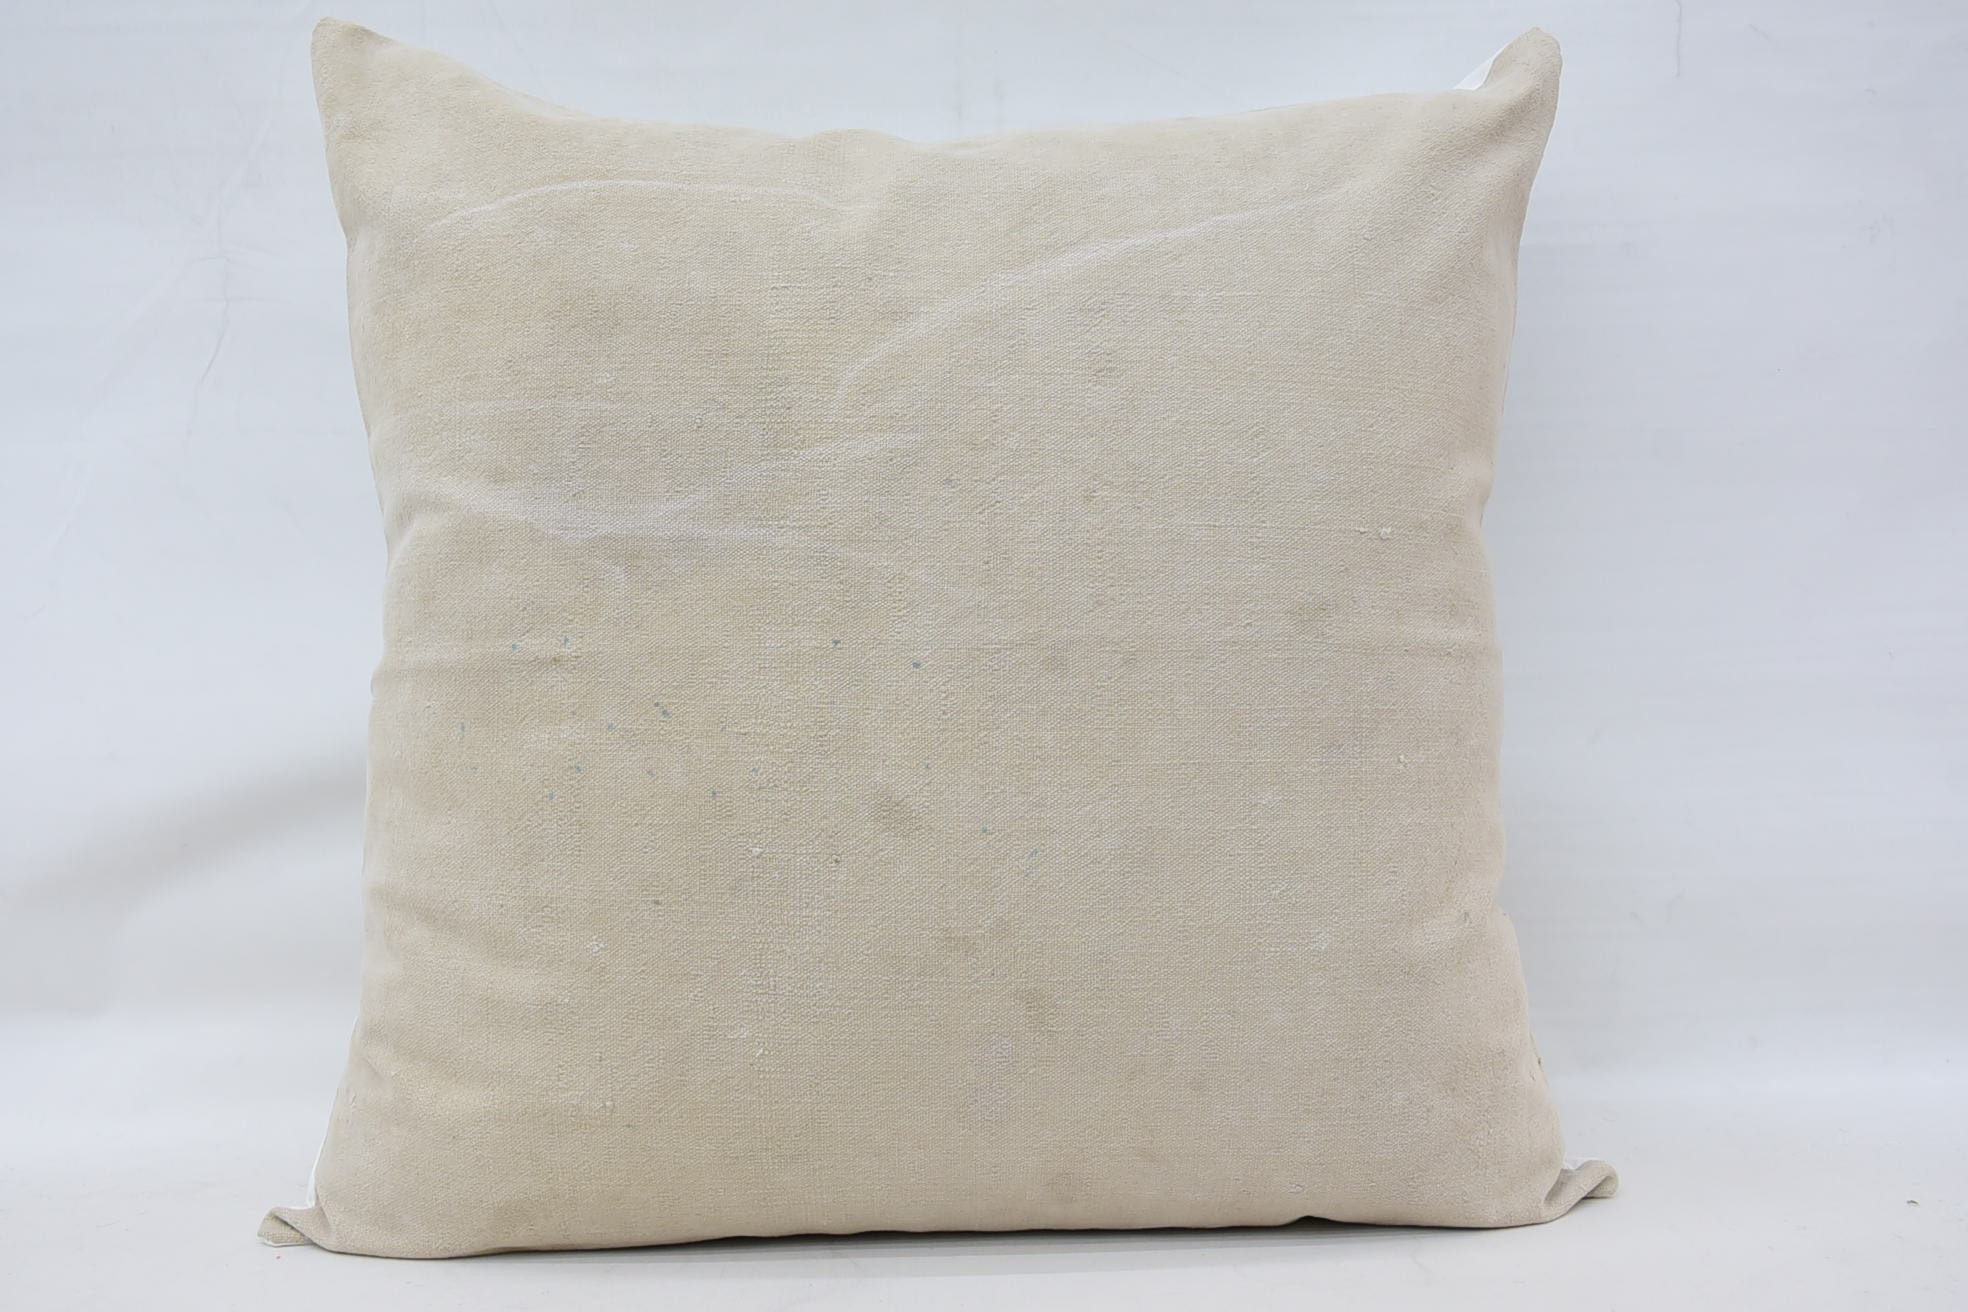 Bed Pillow, Antique Pillows, 32"x32" White Cushion Cover, Turkish Kilim Pillow, Pattern Throw Pillow, Vintage Kilim Pillow